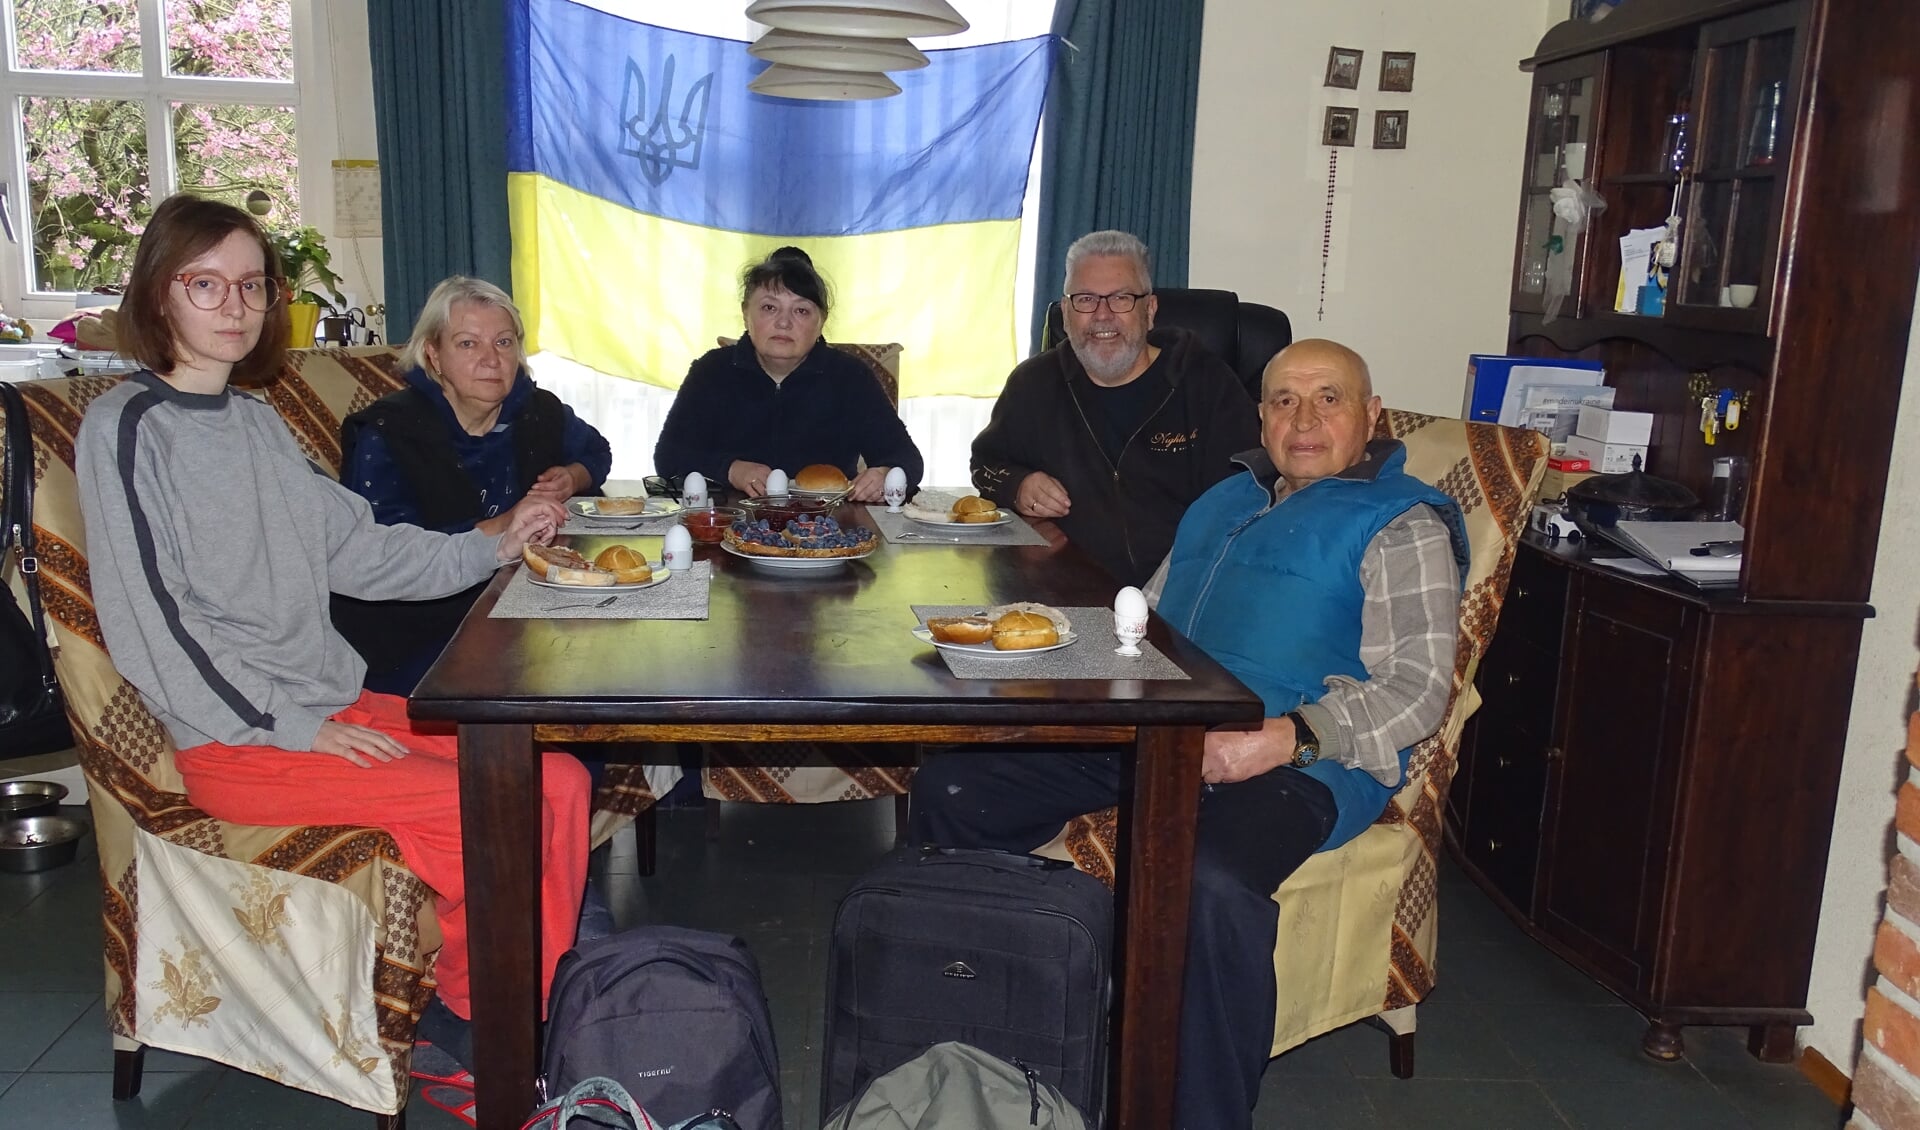 Vrnl: Vader Boris, Johan en zijn vrouw Nataliia, oude buurvrouw Ludmila en diens dochter Maryna, samen aan de ontbijttafel. (Foto: J. Boonstra)